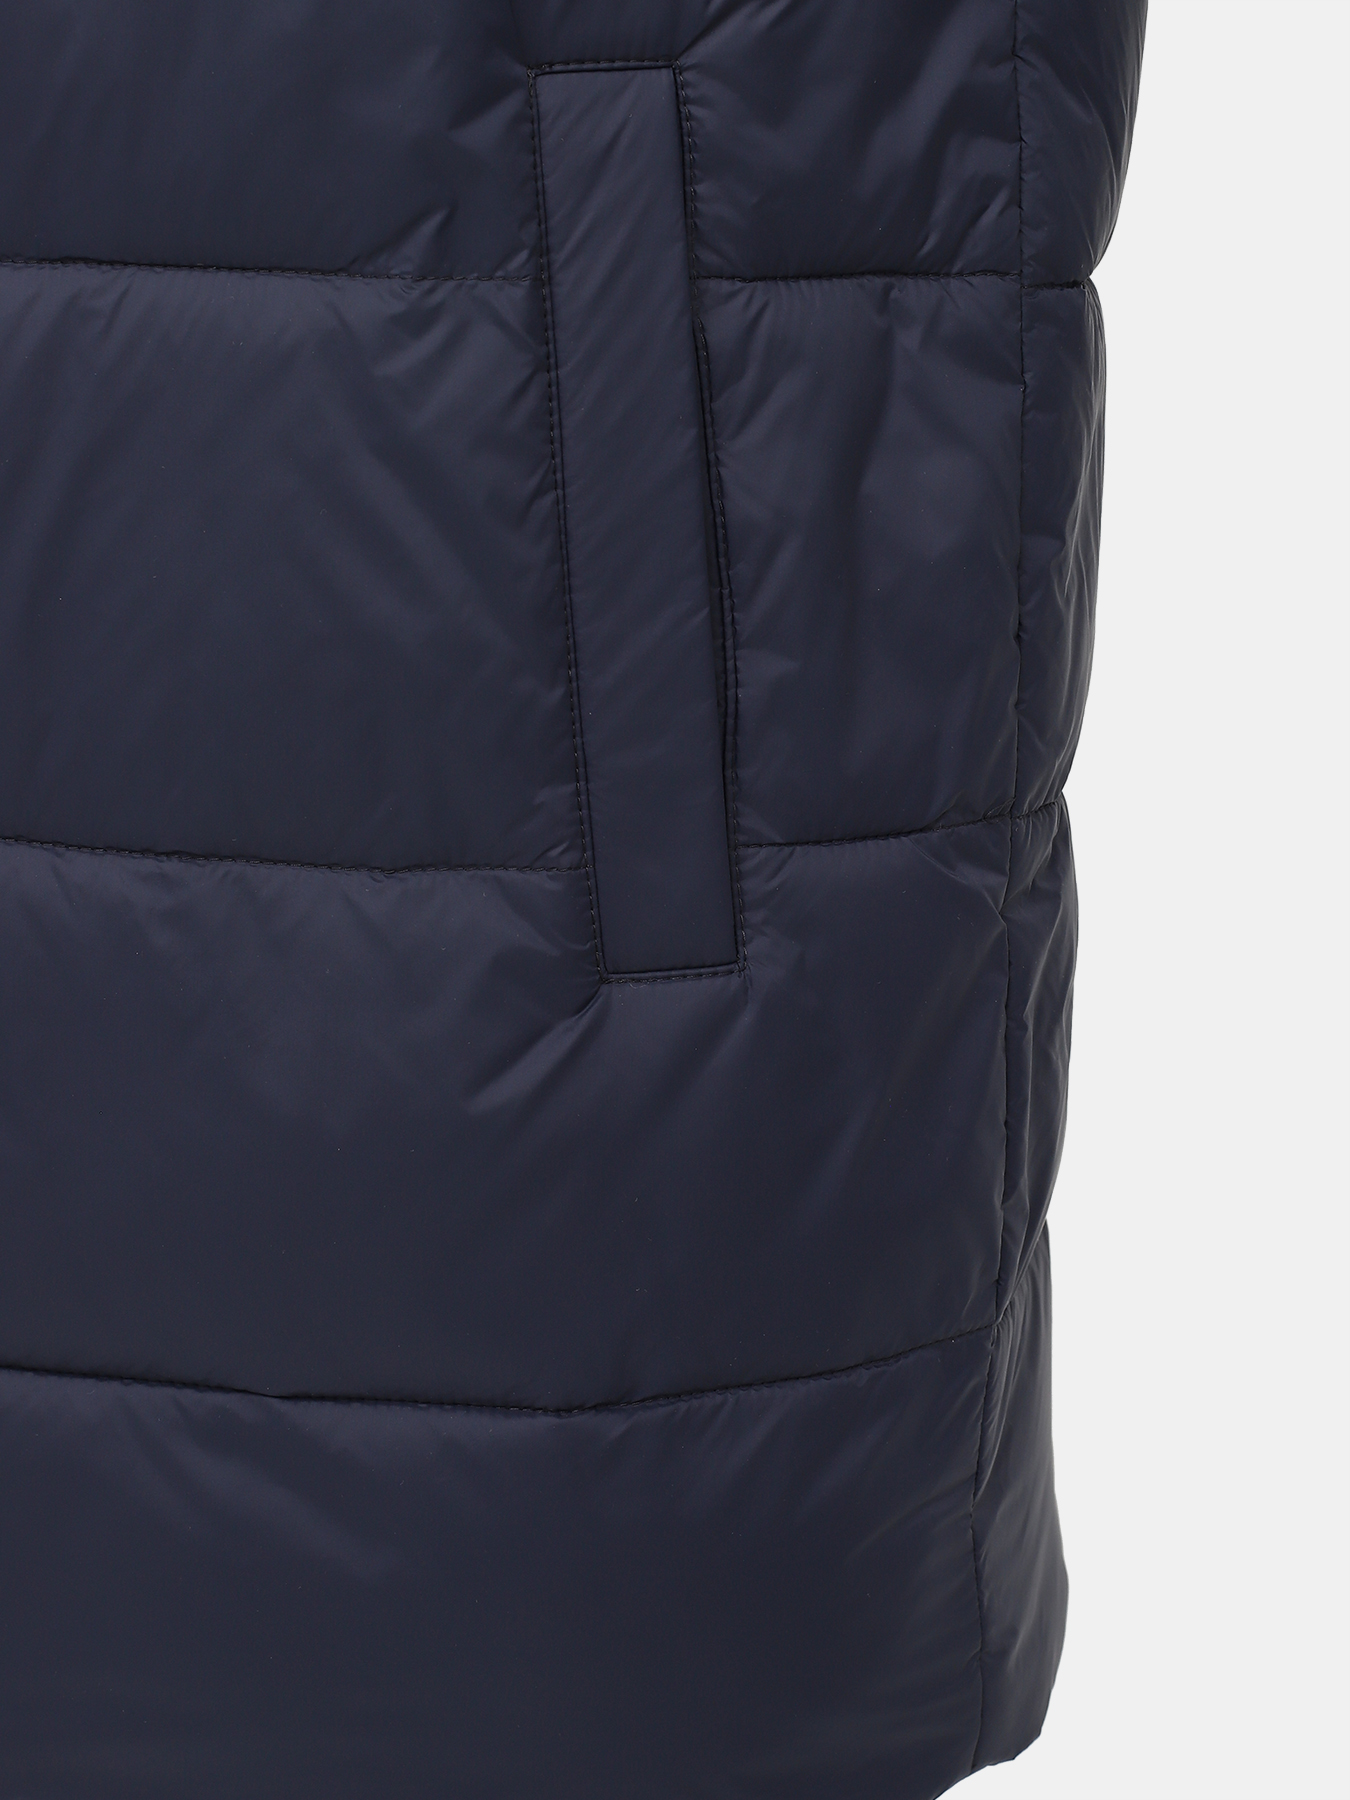 Удлиненная куртка Mati HUGO 426056-044, цвет темно-синий, размер 50-52 - фото 4